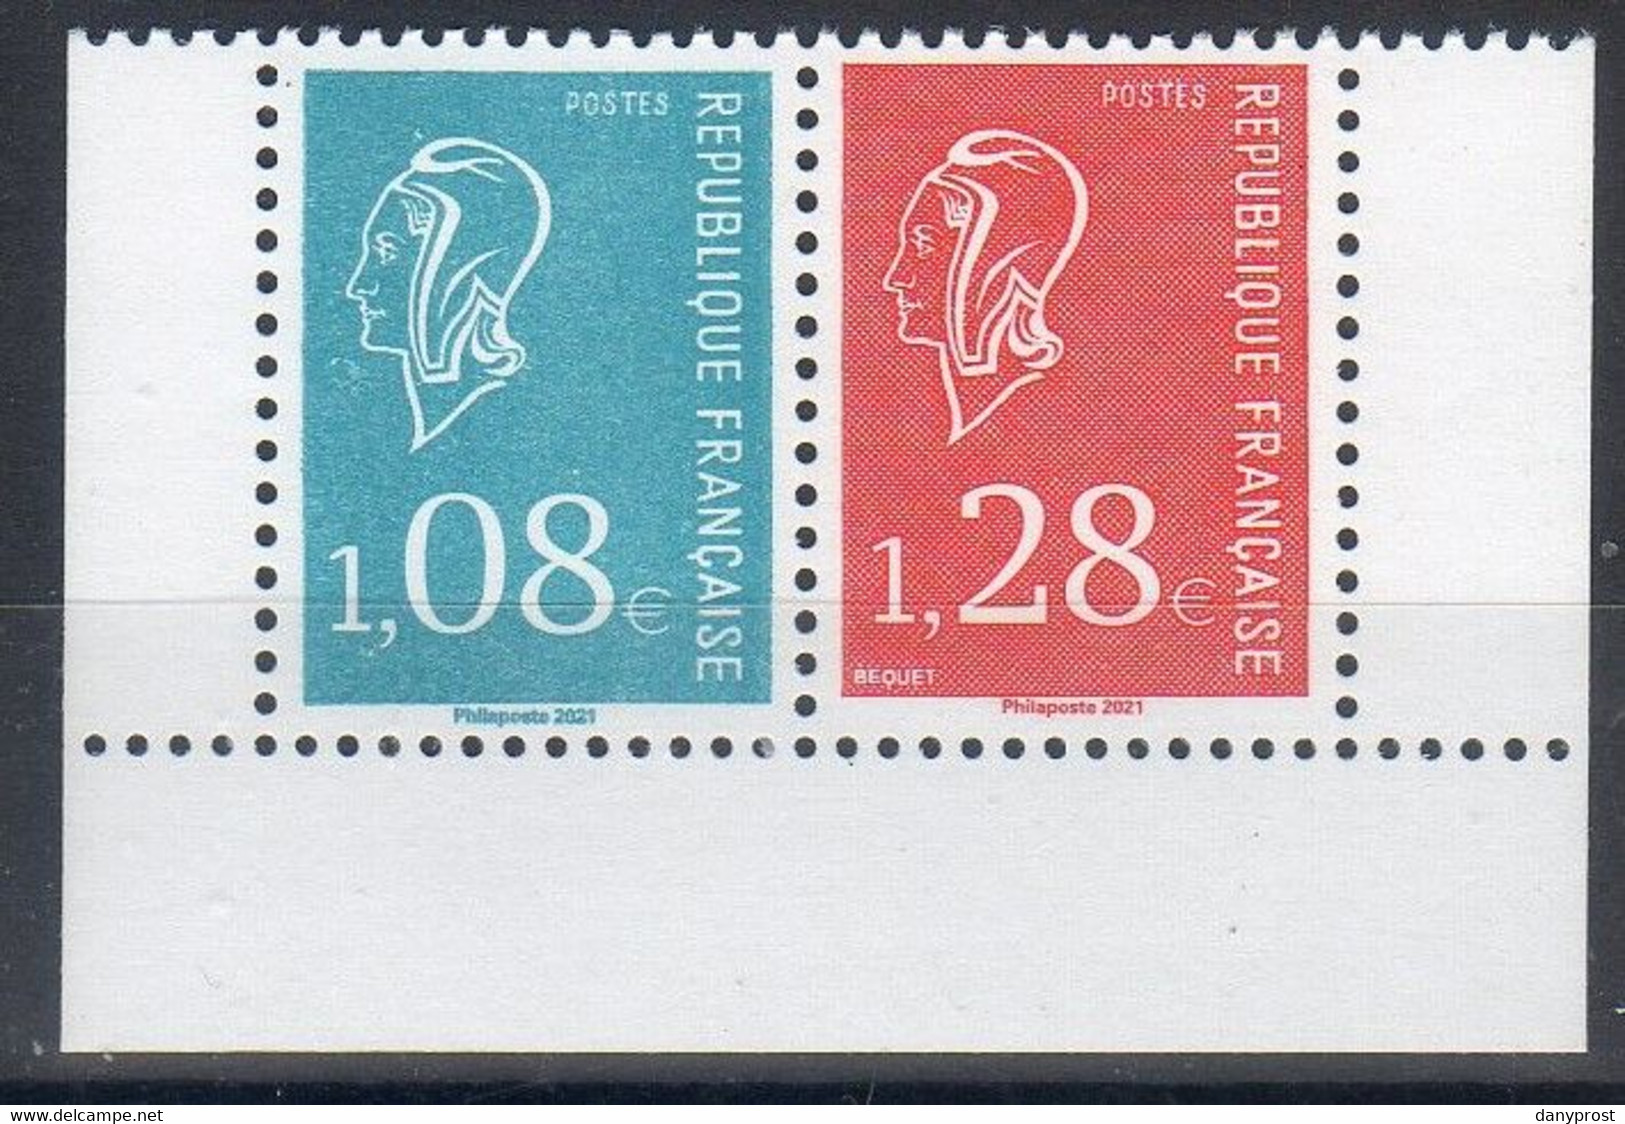 2021-75è SALON PHILATELIQUE " Une Paire à 1.08 € Bleu+1.28 € Rouge "  Les 3 Bords Du Carnet Marianne De BEQUET 1971 Neuf - Unused Stamps